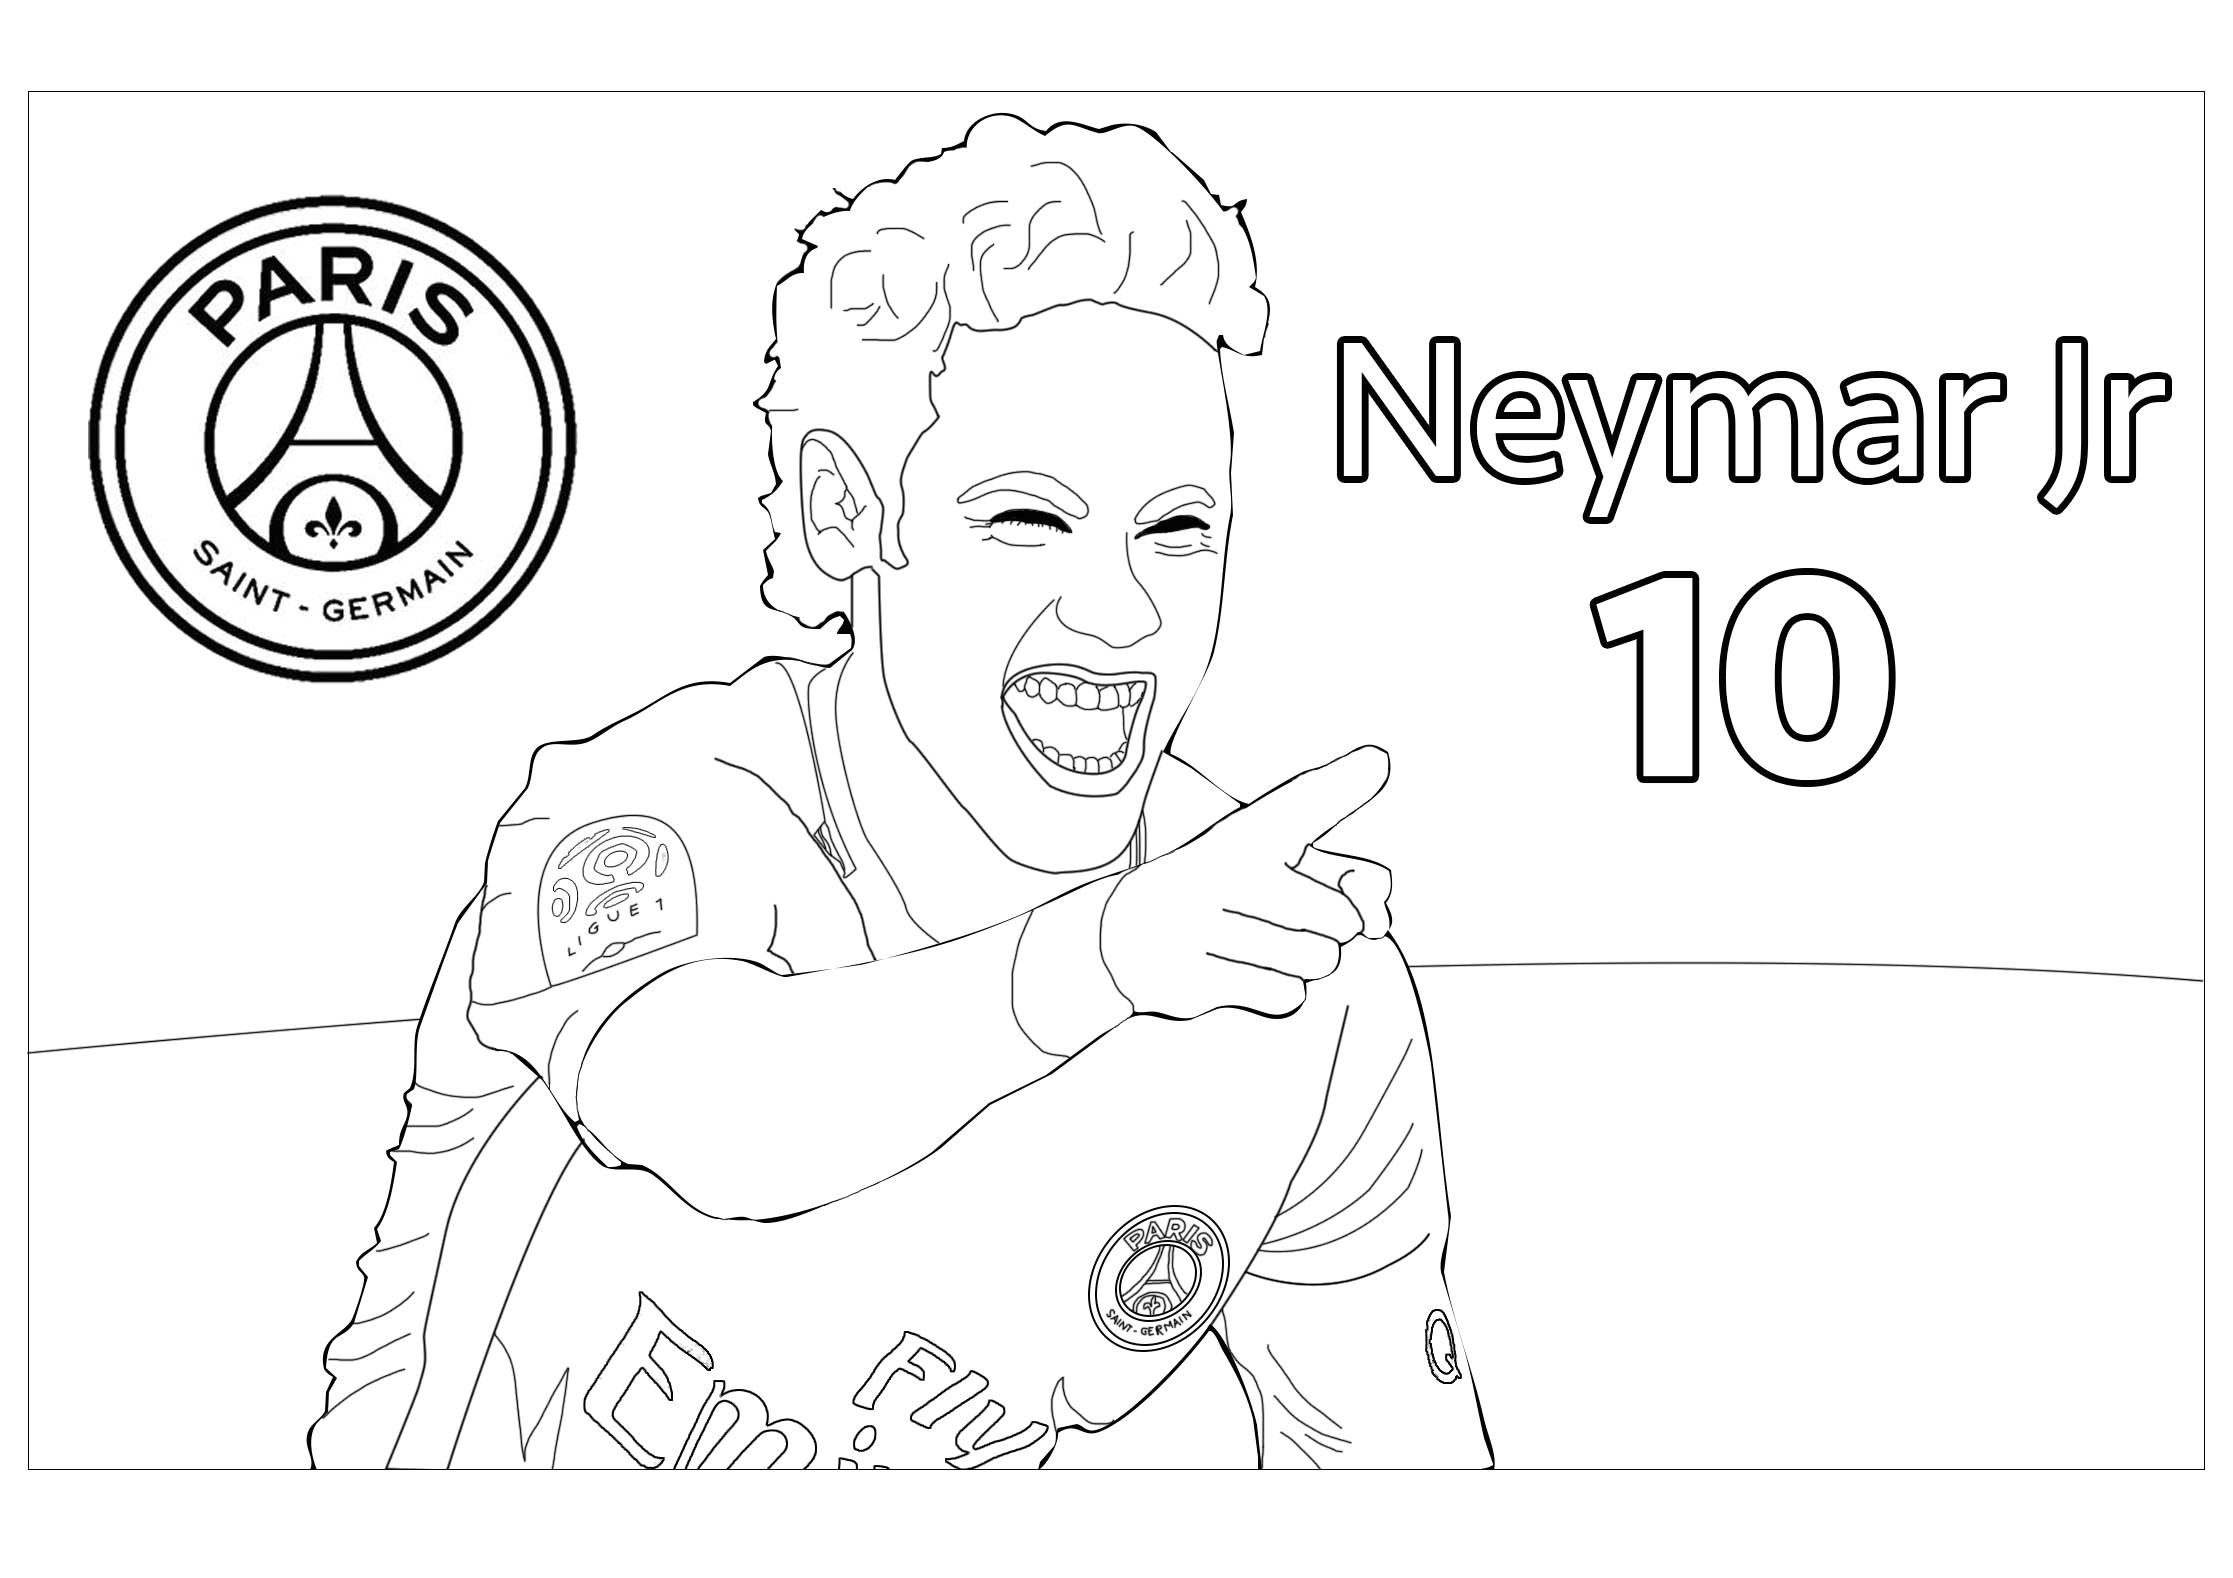 Coloriage Neymar Gratuit Football Neymar Jr 1 Sport Jeux Olympiques Coloriages